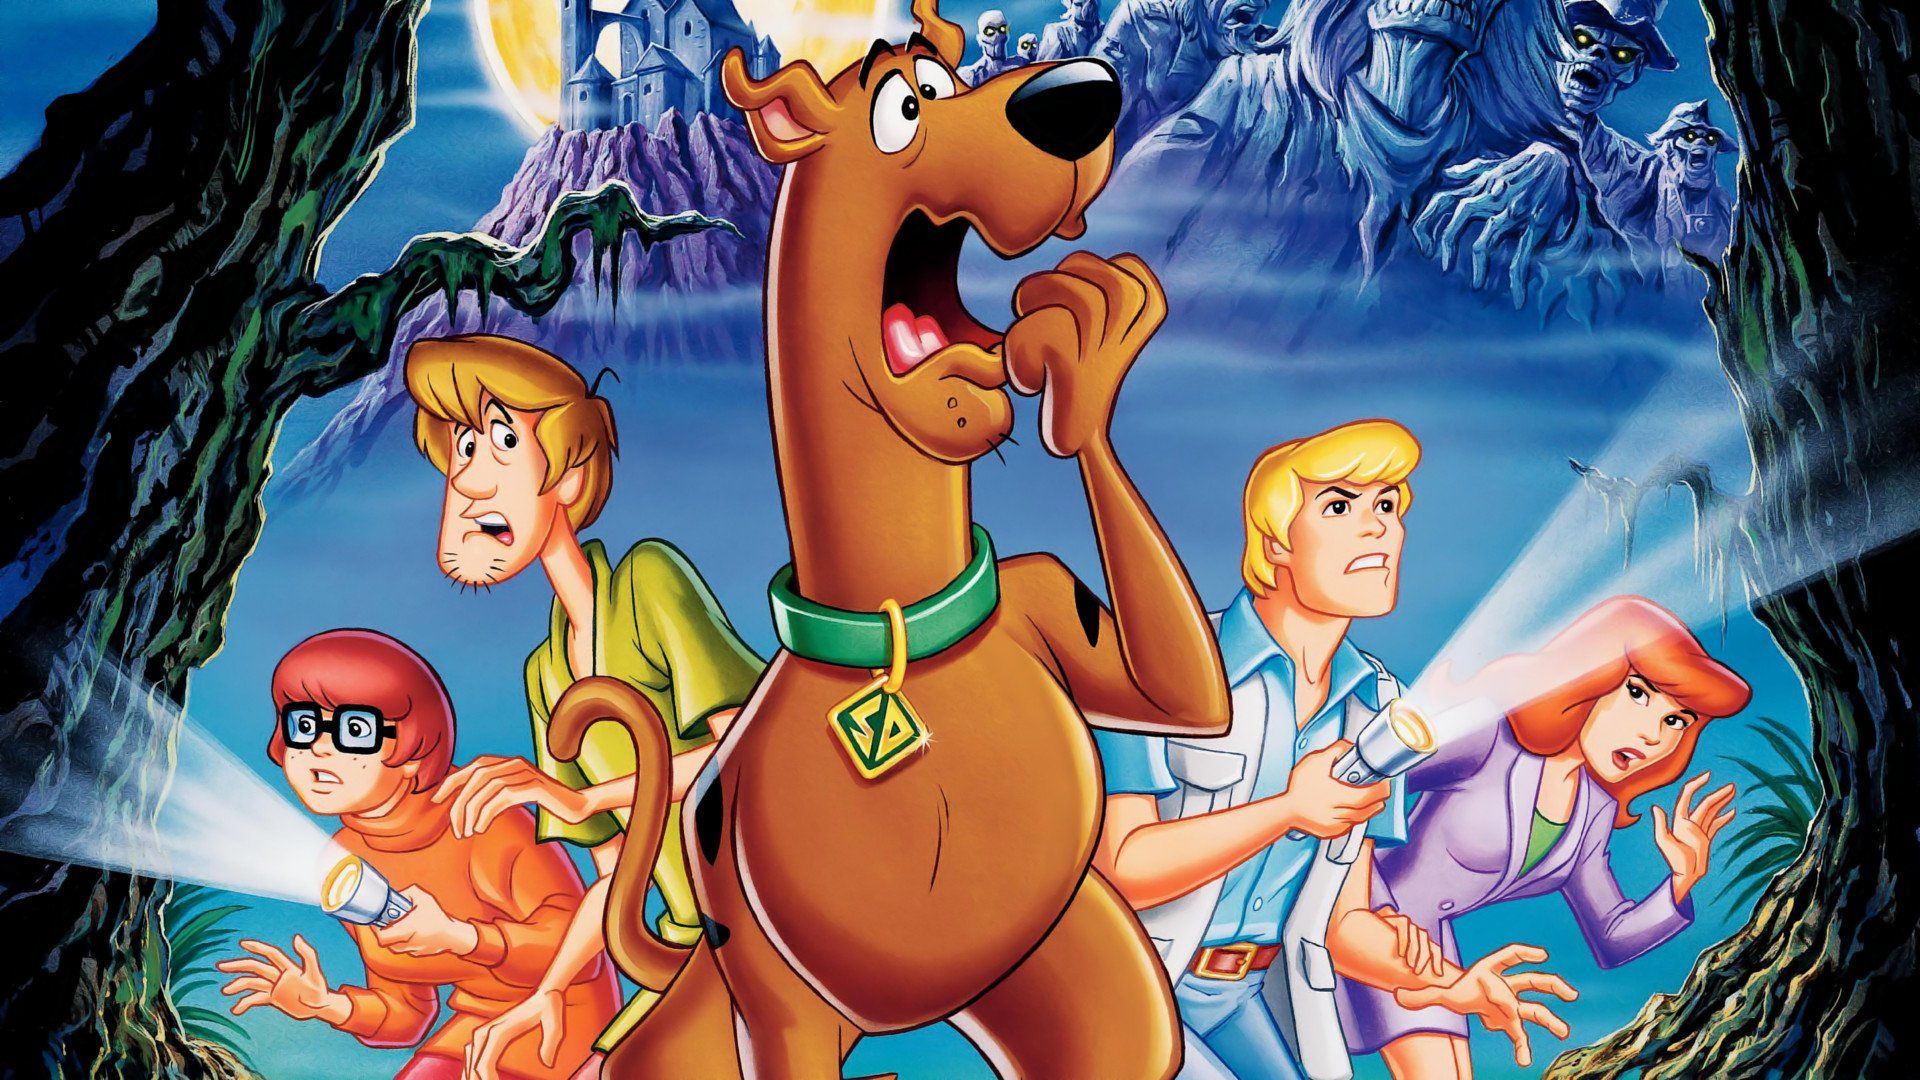 Scooby Doo Wallpaper  Scooby doo images Scooby doo pictures Scooby doo